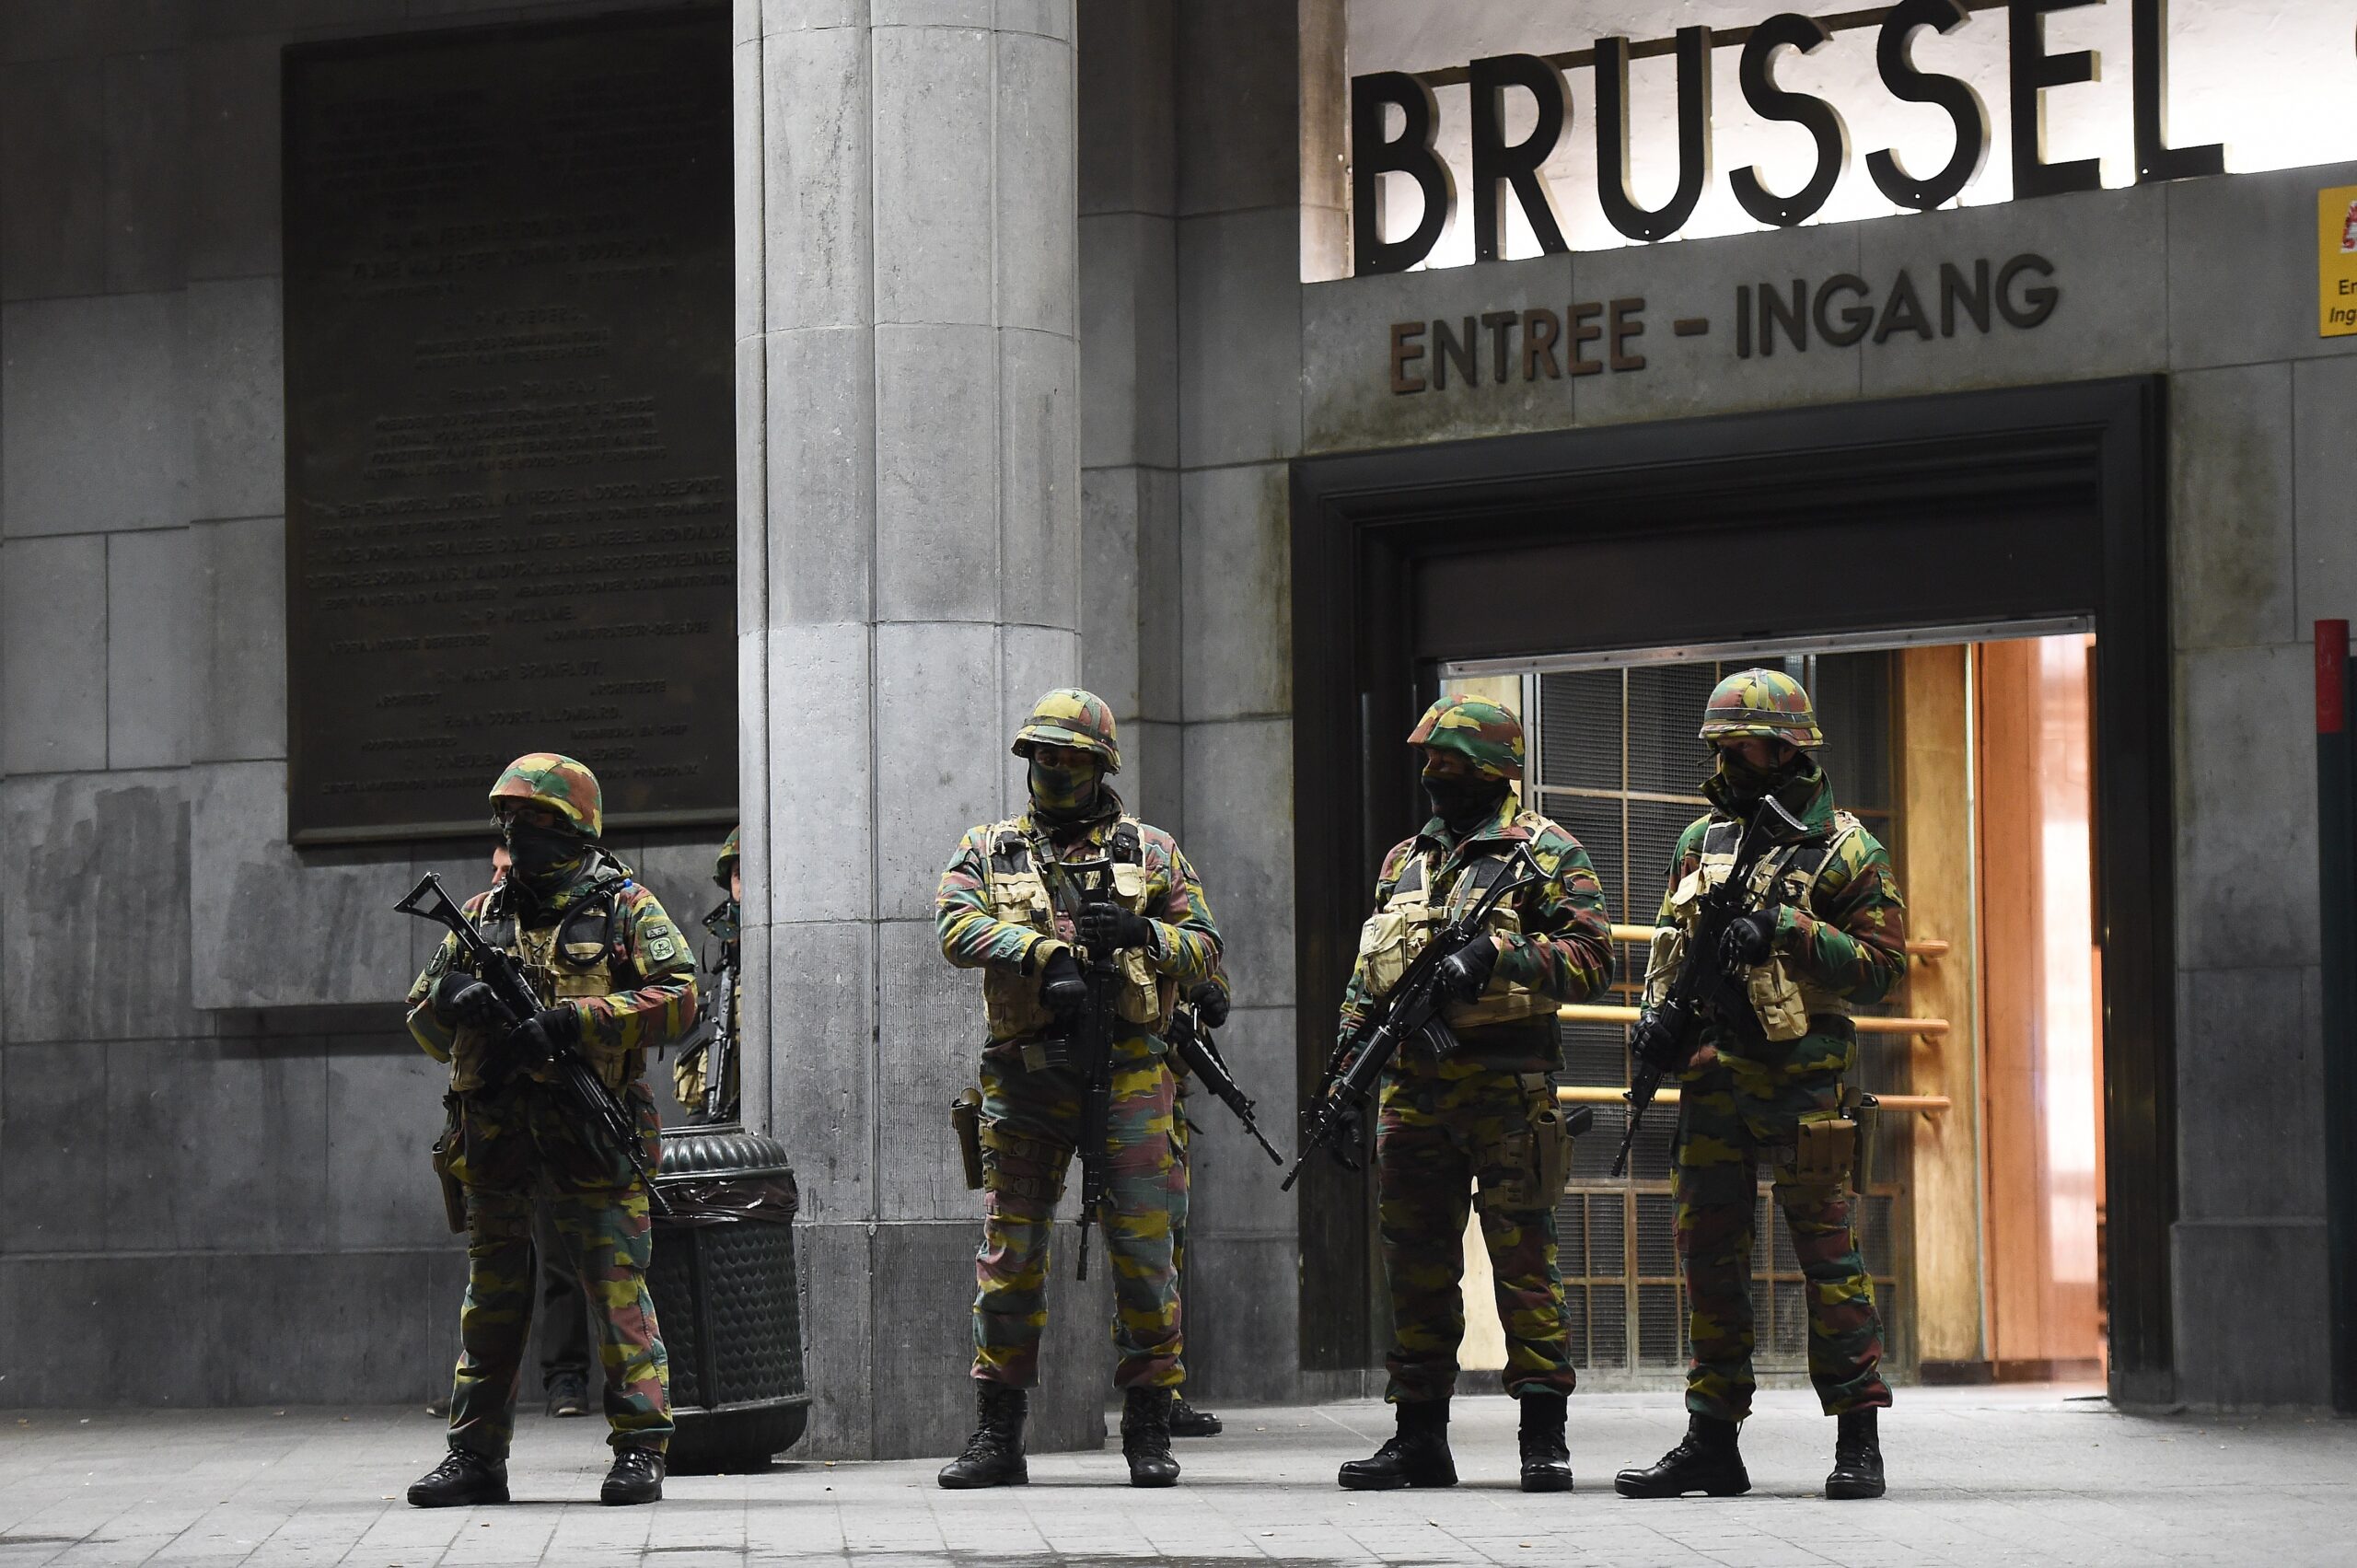 Βρυξέλλες:  Ένοπλη επίθεση εξτρεμιστή μουσουλμάνου με ΑΚ47 – Δύο νεκροί